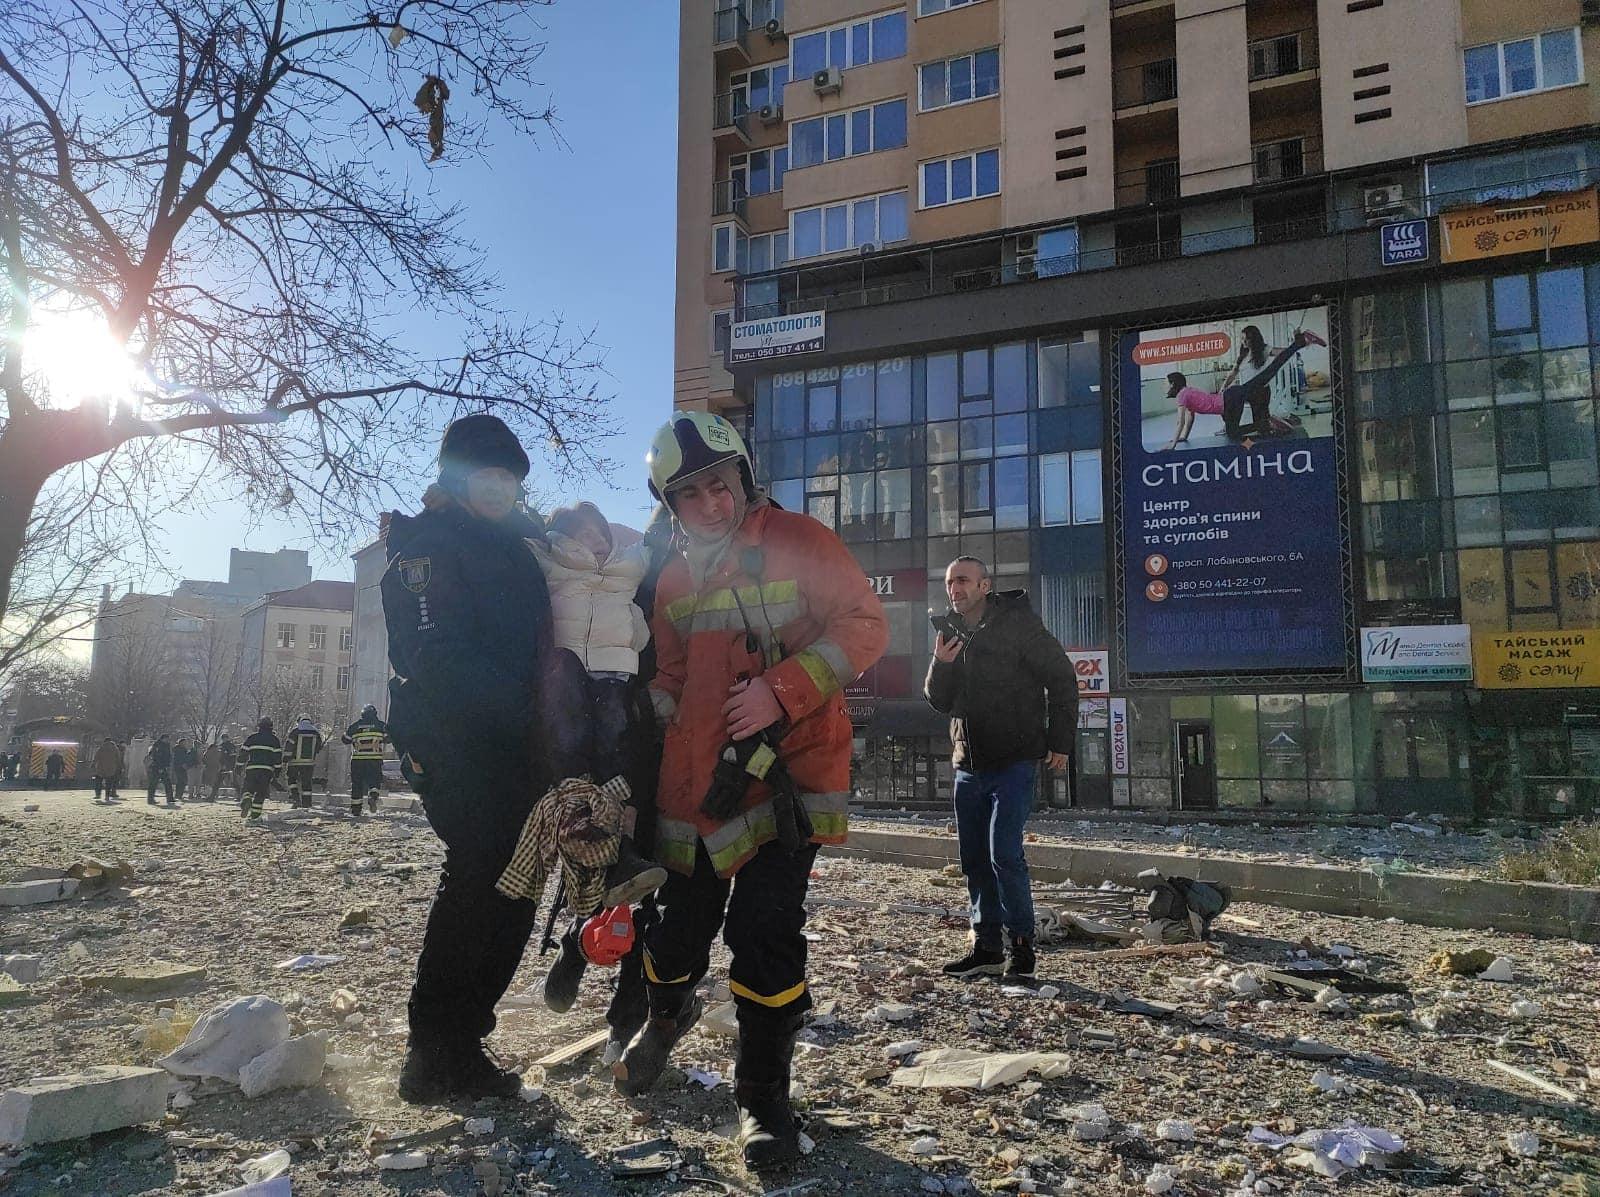 Pompierii transportă o femeie pe brațe, după atacul cu rachetă din Kiev